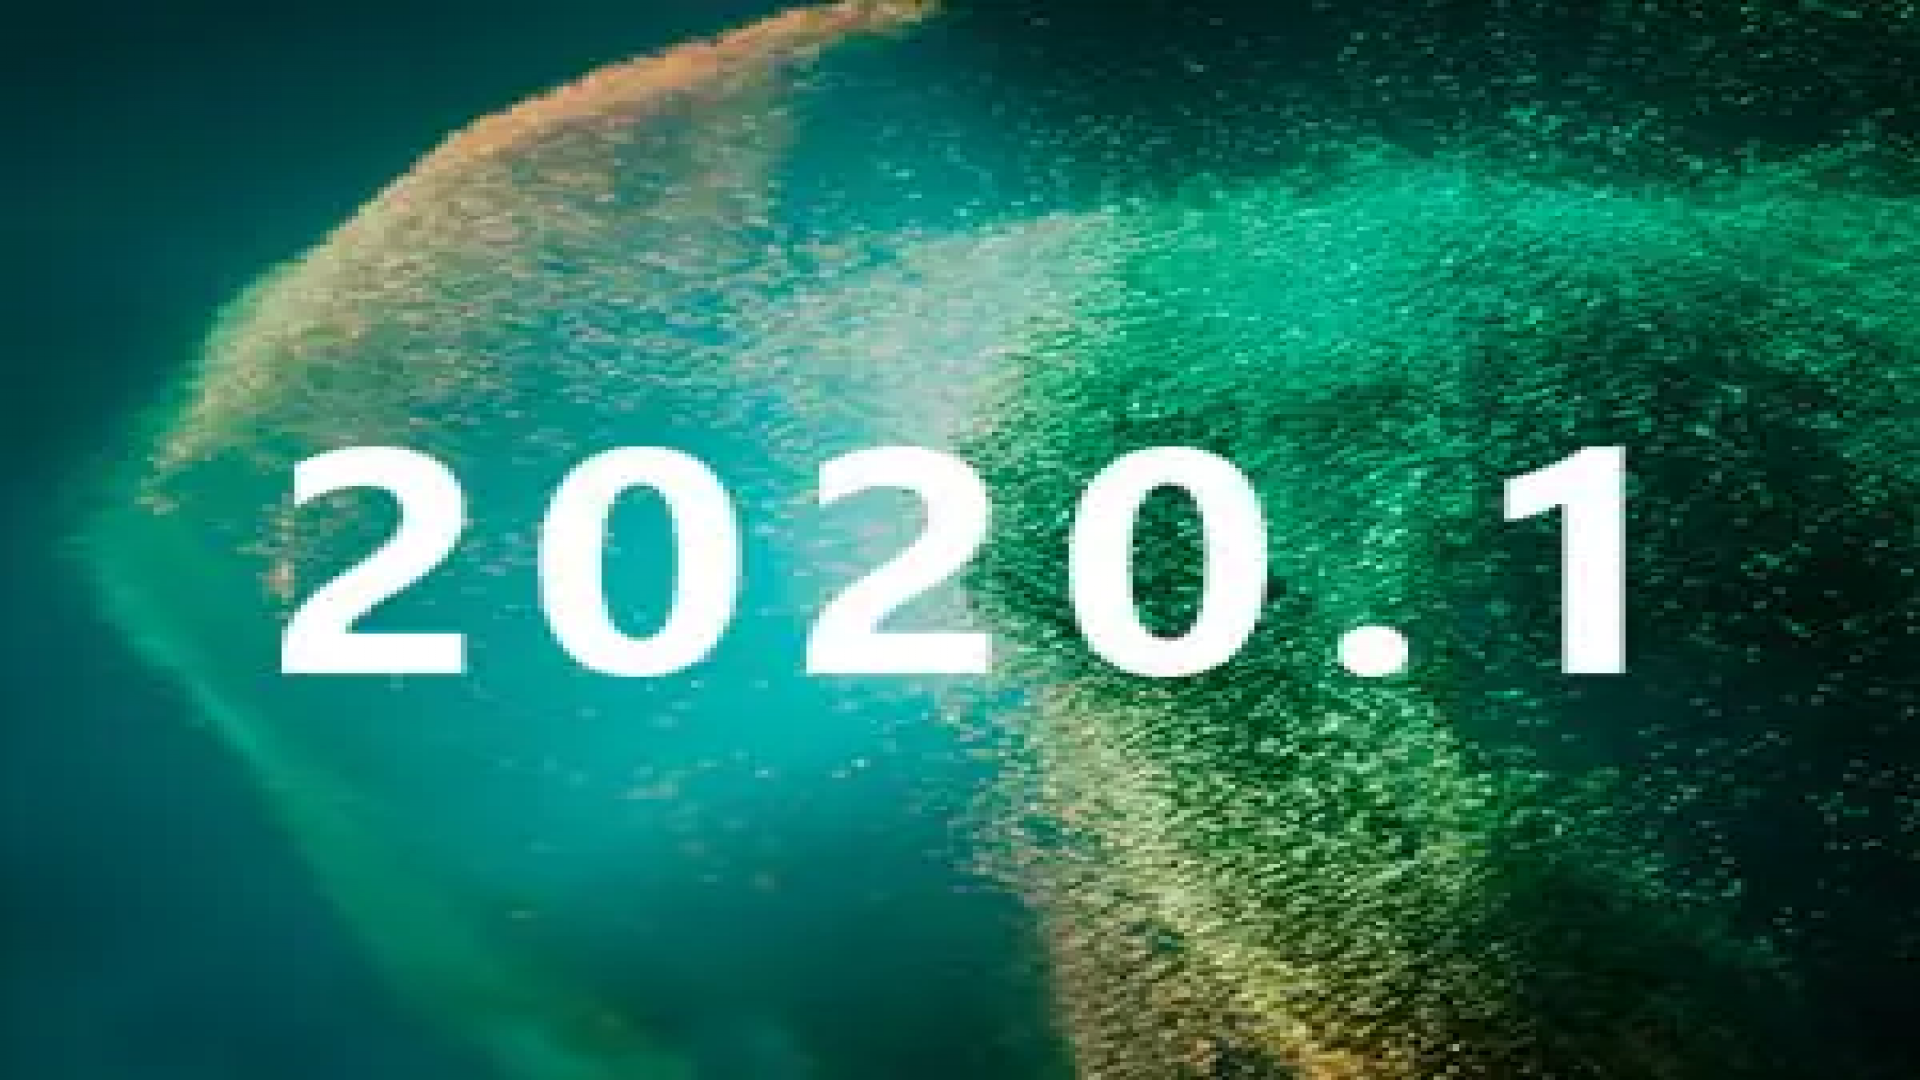 Unity 2020.1 é oficialmente anunciada